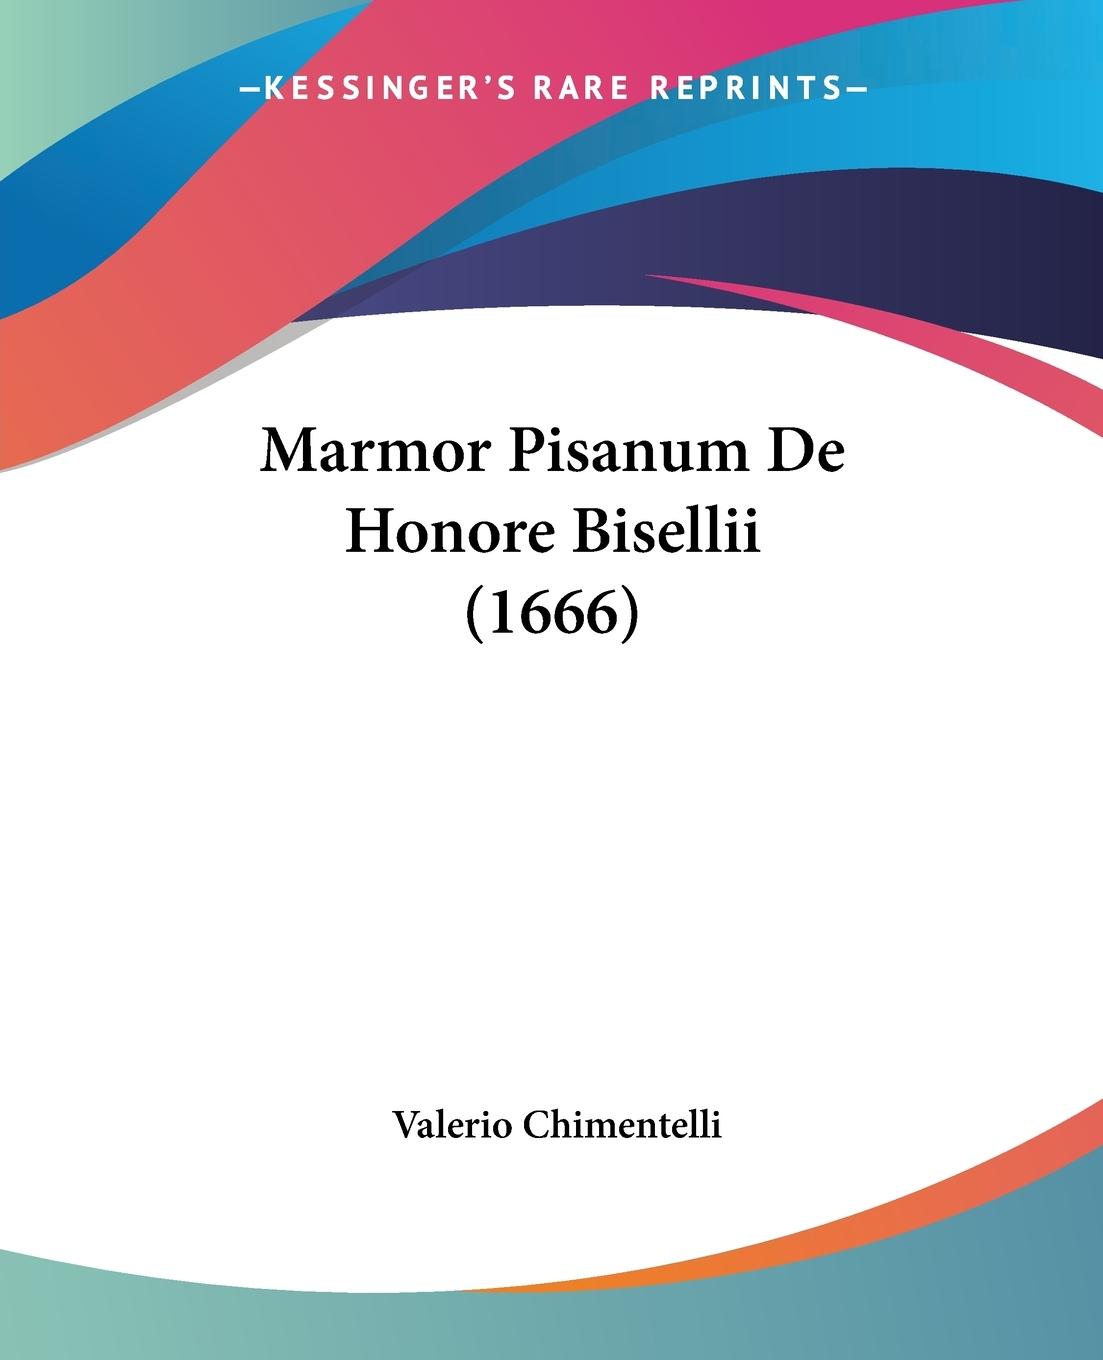 Marmor Pisanum De Honore Bisellii (1666) - Chimentelli, Valerio